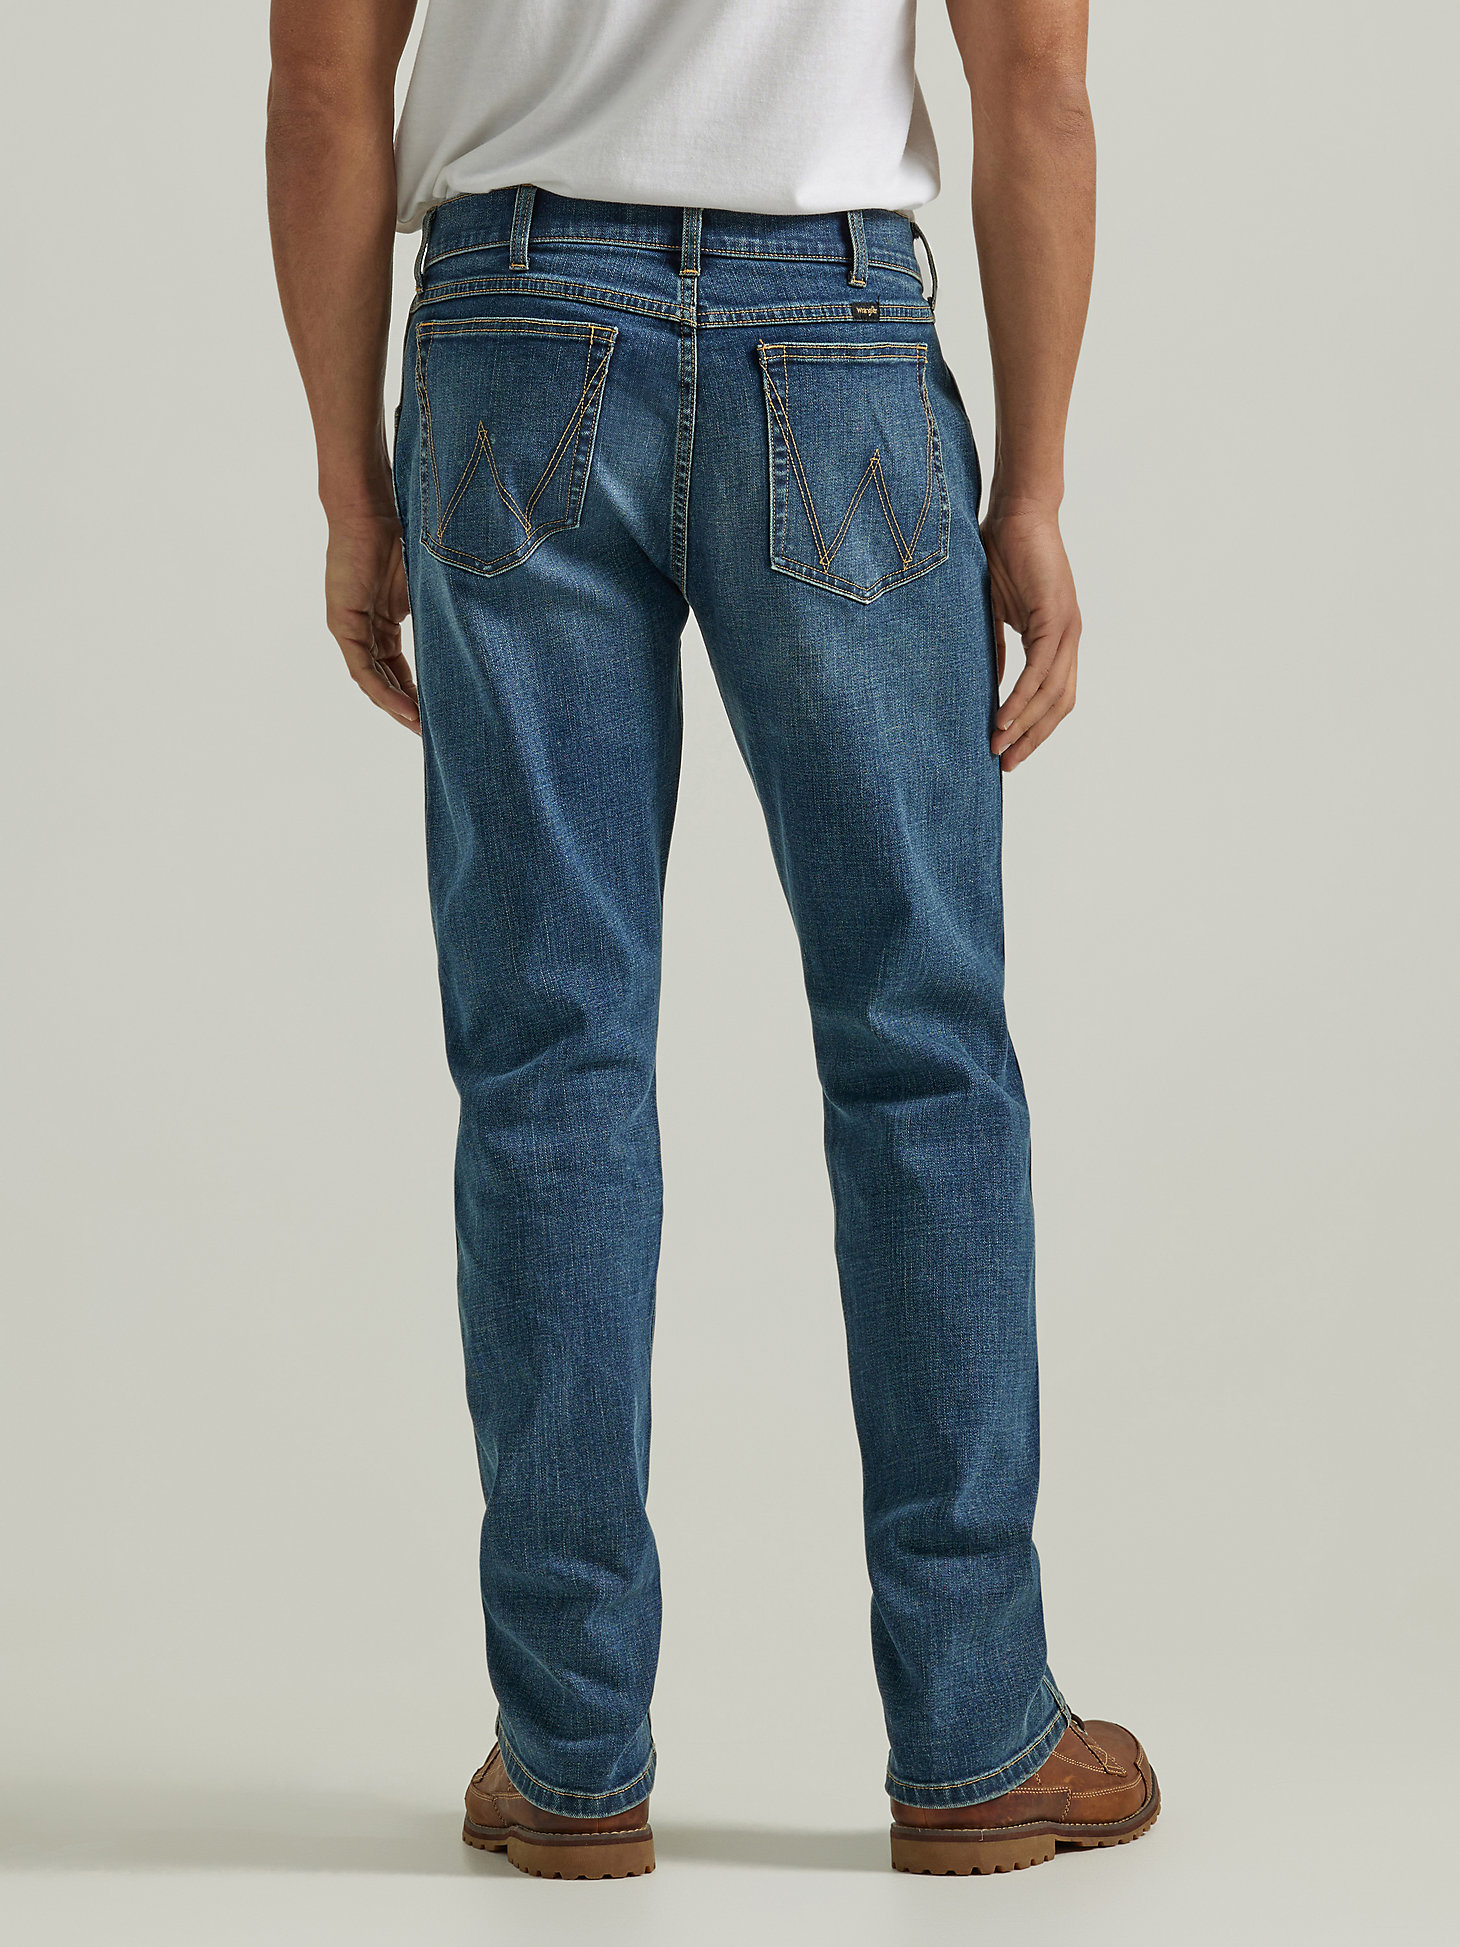 Men's Wrangler® Slim Straight Jean in Mid Wash alternative view 4